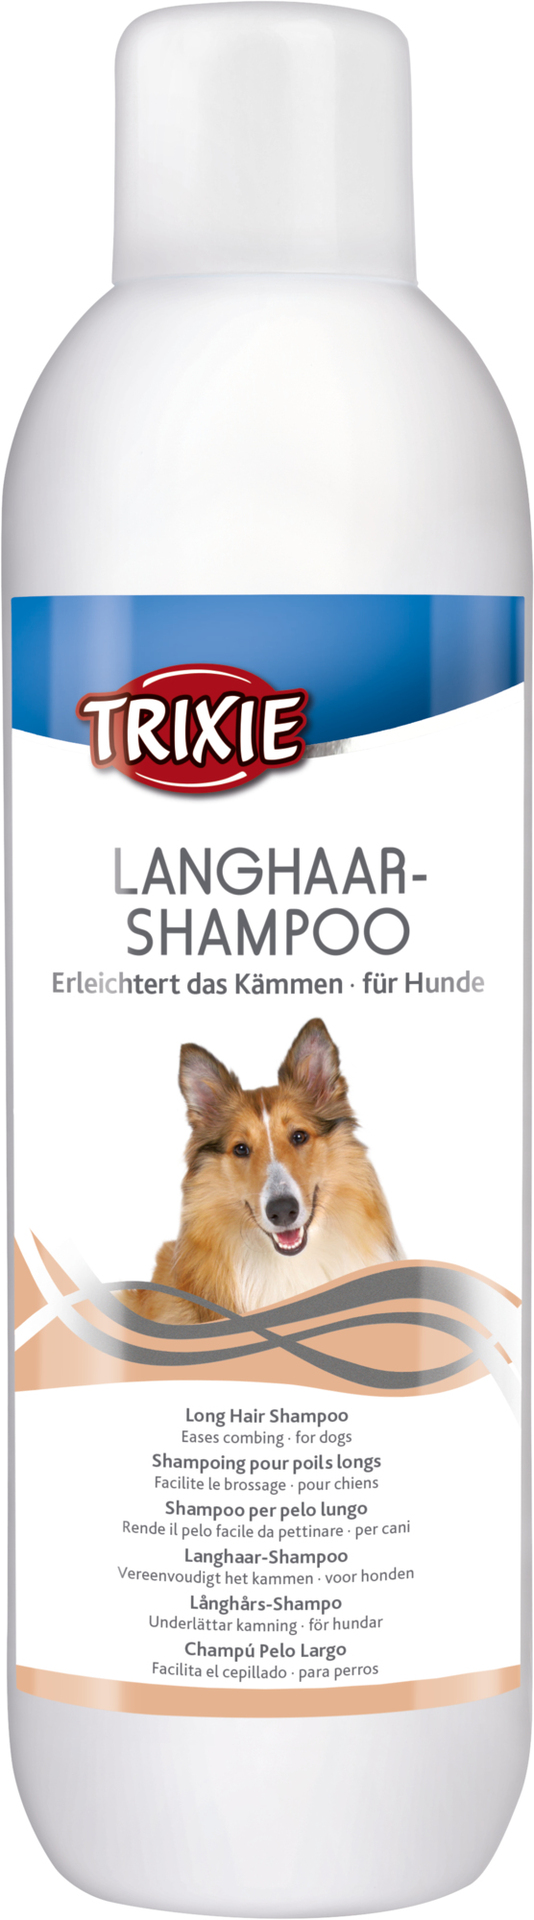 TRIXIE Langhaar-Shampoo